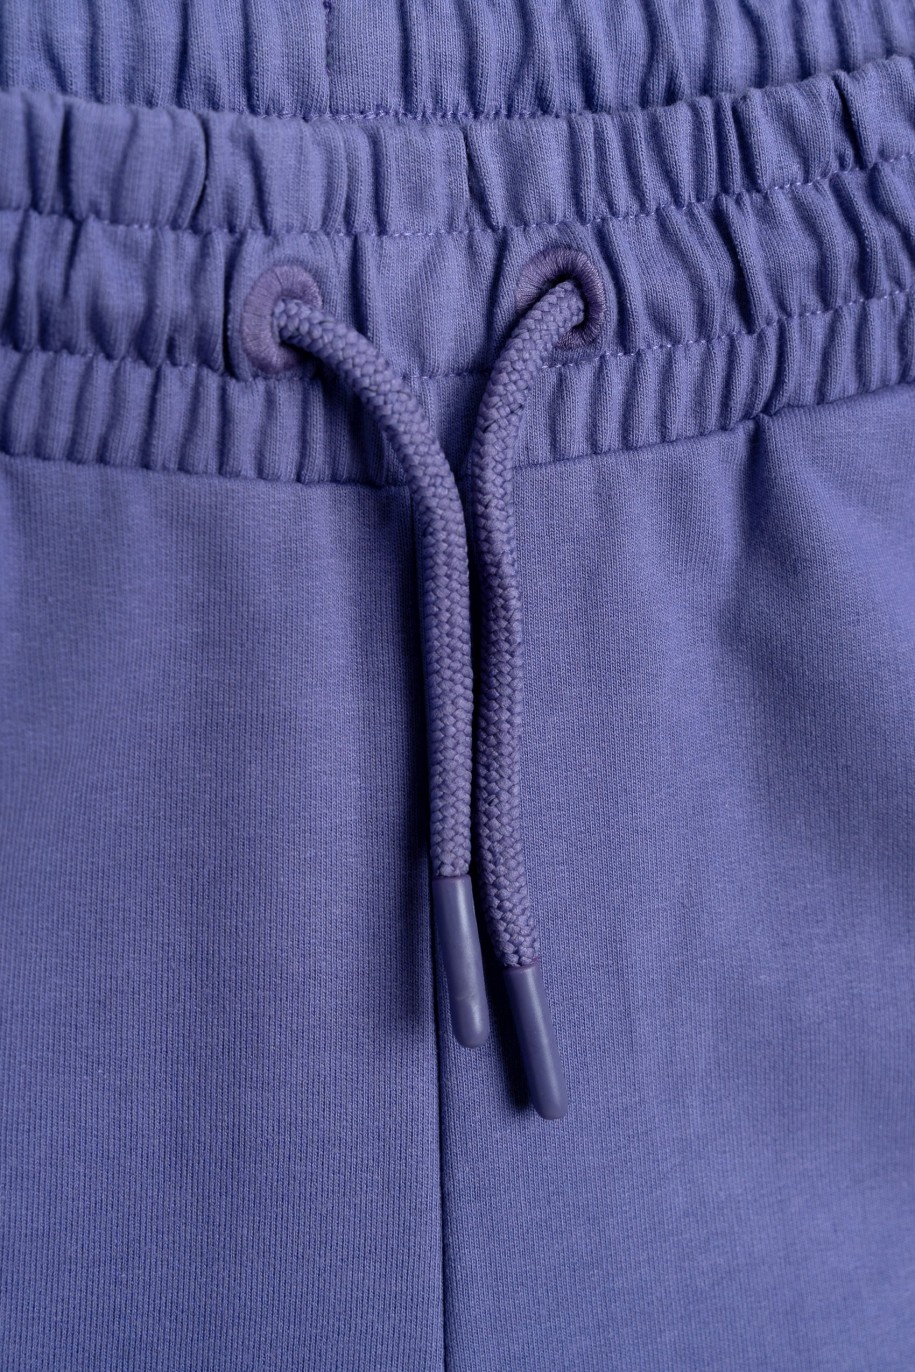 Fioletowe spodnie dresowe z nogawkami typu wide leg - 47342